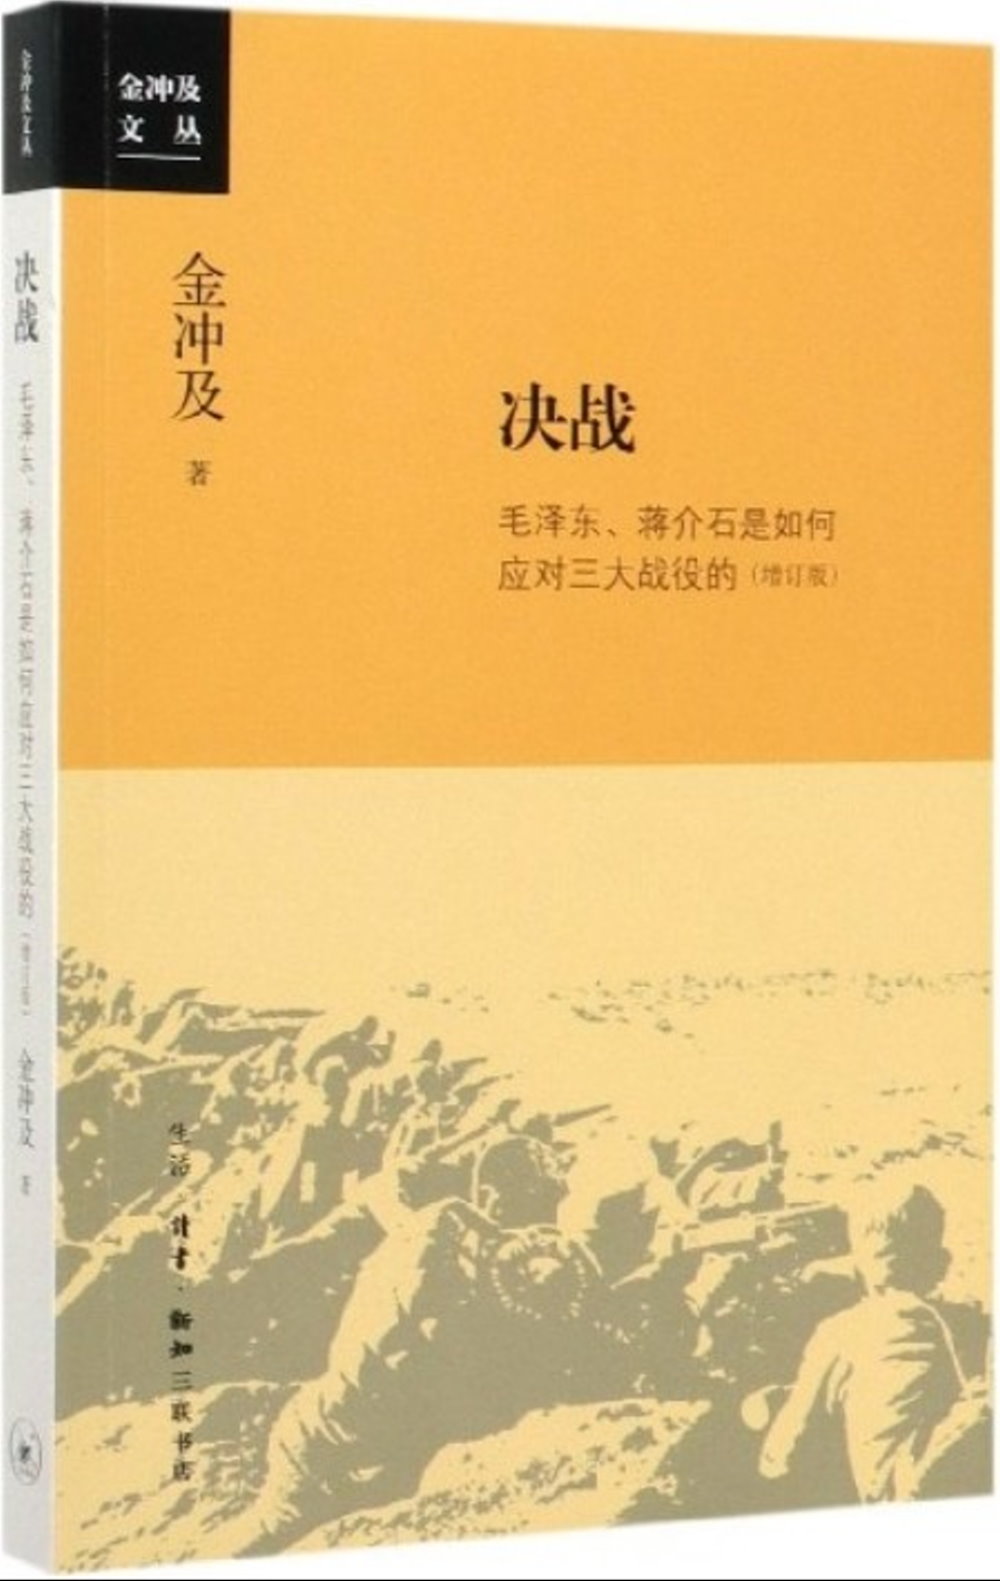 決戰：毛澤東、蔣介石是如何應對三大戰役的(增訂版)